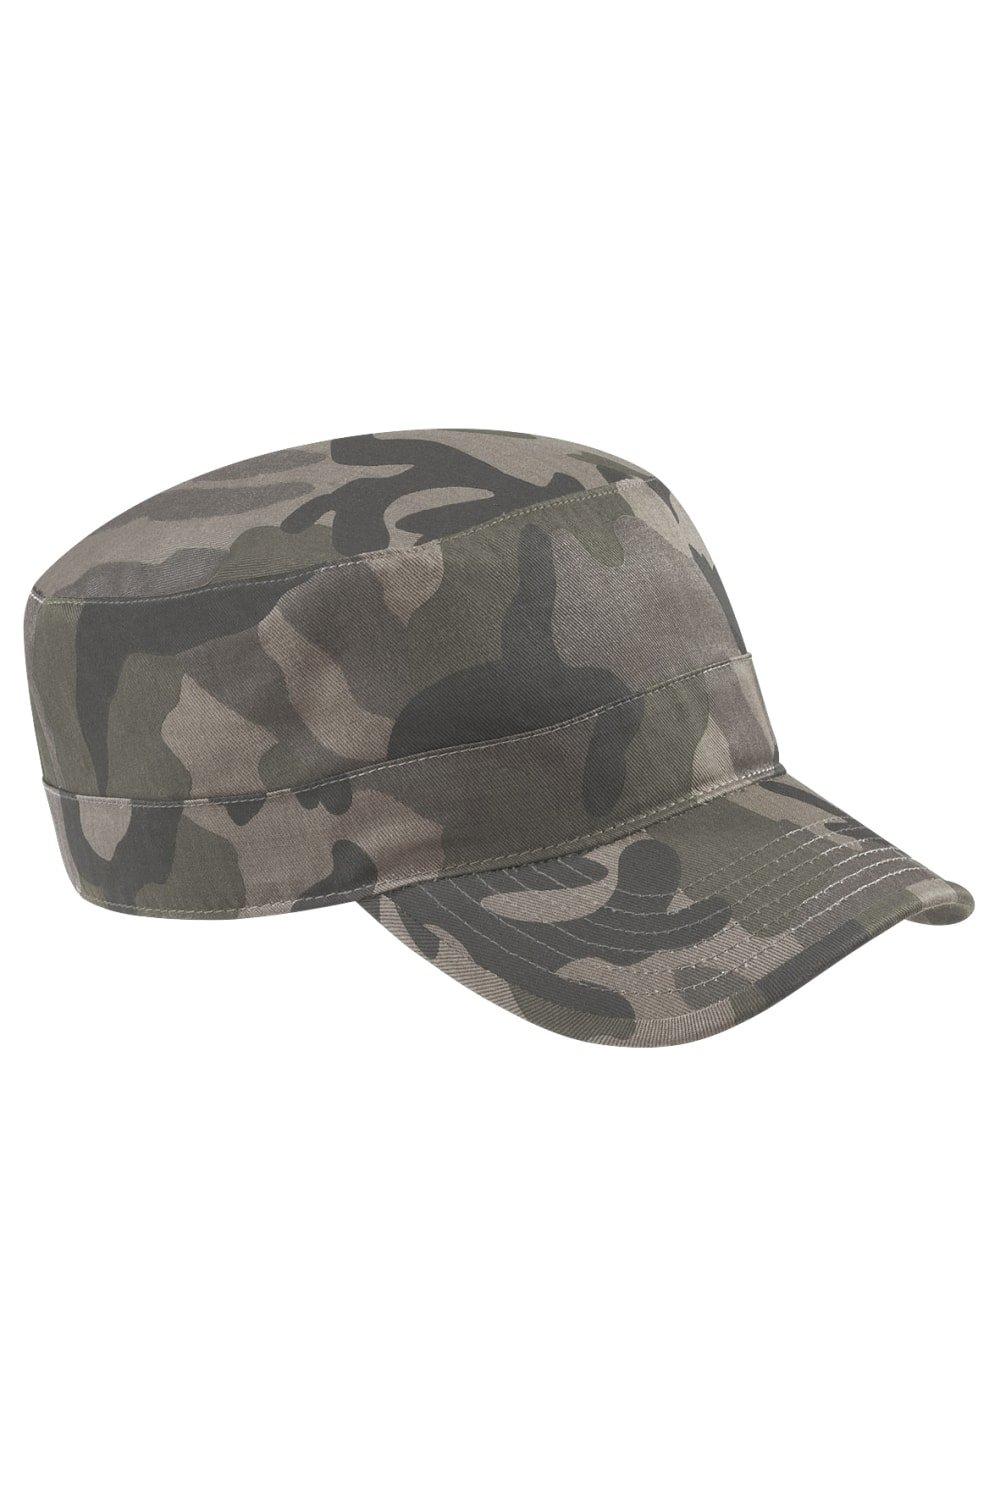 Камуфляжная армейская кепка/головной убор Beechfield, хаки футболка хлопок принт камуфляжный размер 56